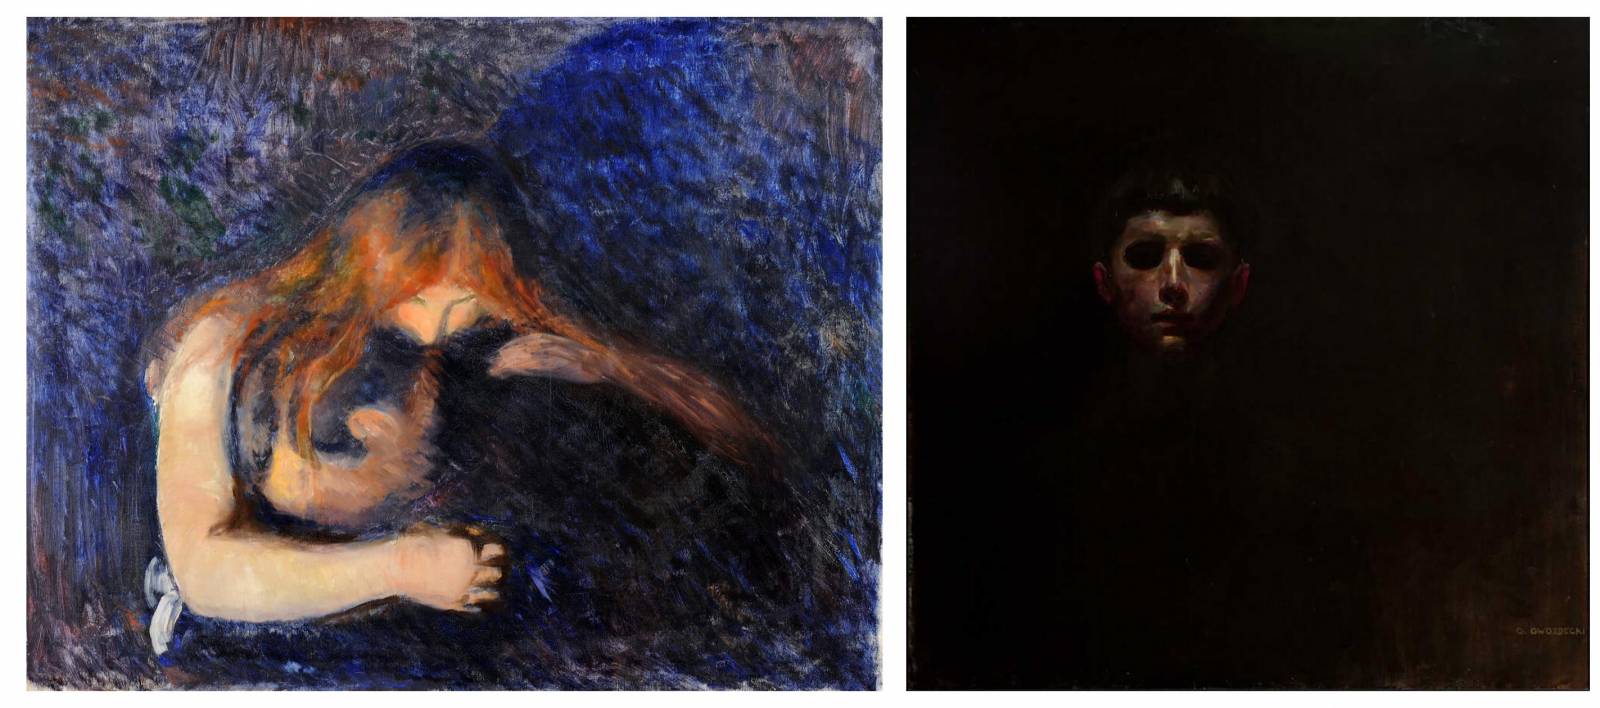 Po lewej: Edvard Munch, The Vampire / Wampir, 1893, olej na płótnie (Fot. Gothenburg Museum of Art); po prawej: Gustaw Gwozdecki (1880-1935), Głowa chłopca (Autoportret, Apokalipsa) ok. 1904; olej, płótno, 100 x 98 cm, Muzeum Narodowe w Krakowie